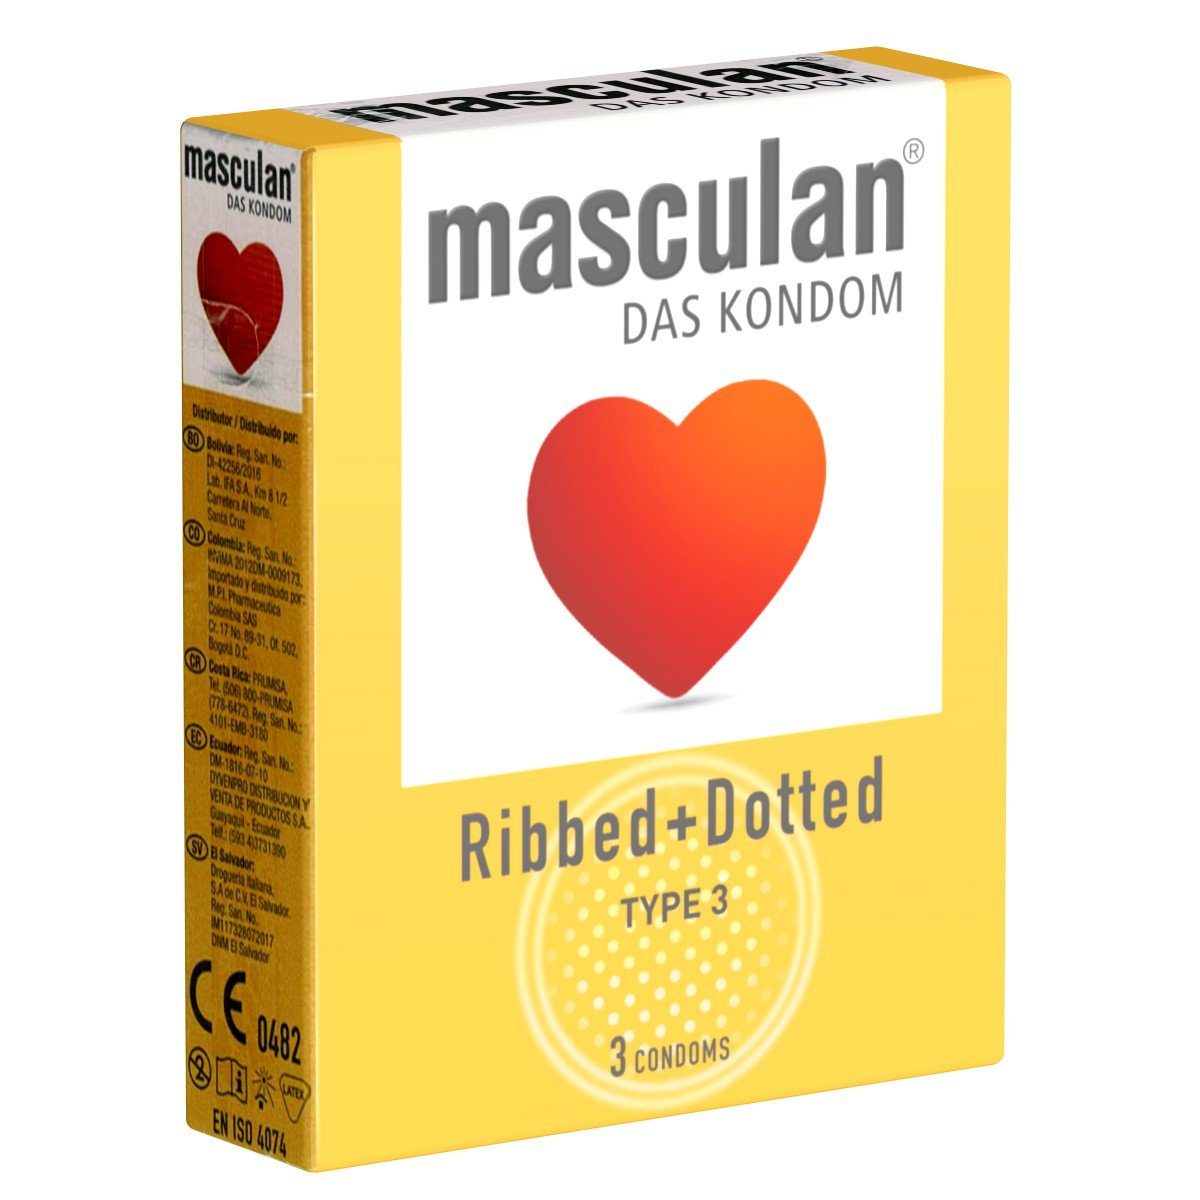 (ribbed/dotted) für 3 Masculan 3 Typ Kondome Kondome Packung mehr Gefühl gerippt-genoppte mit, St.,